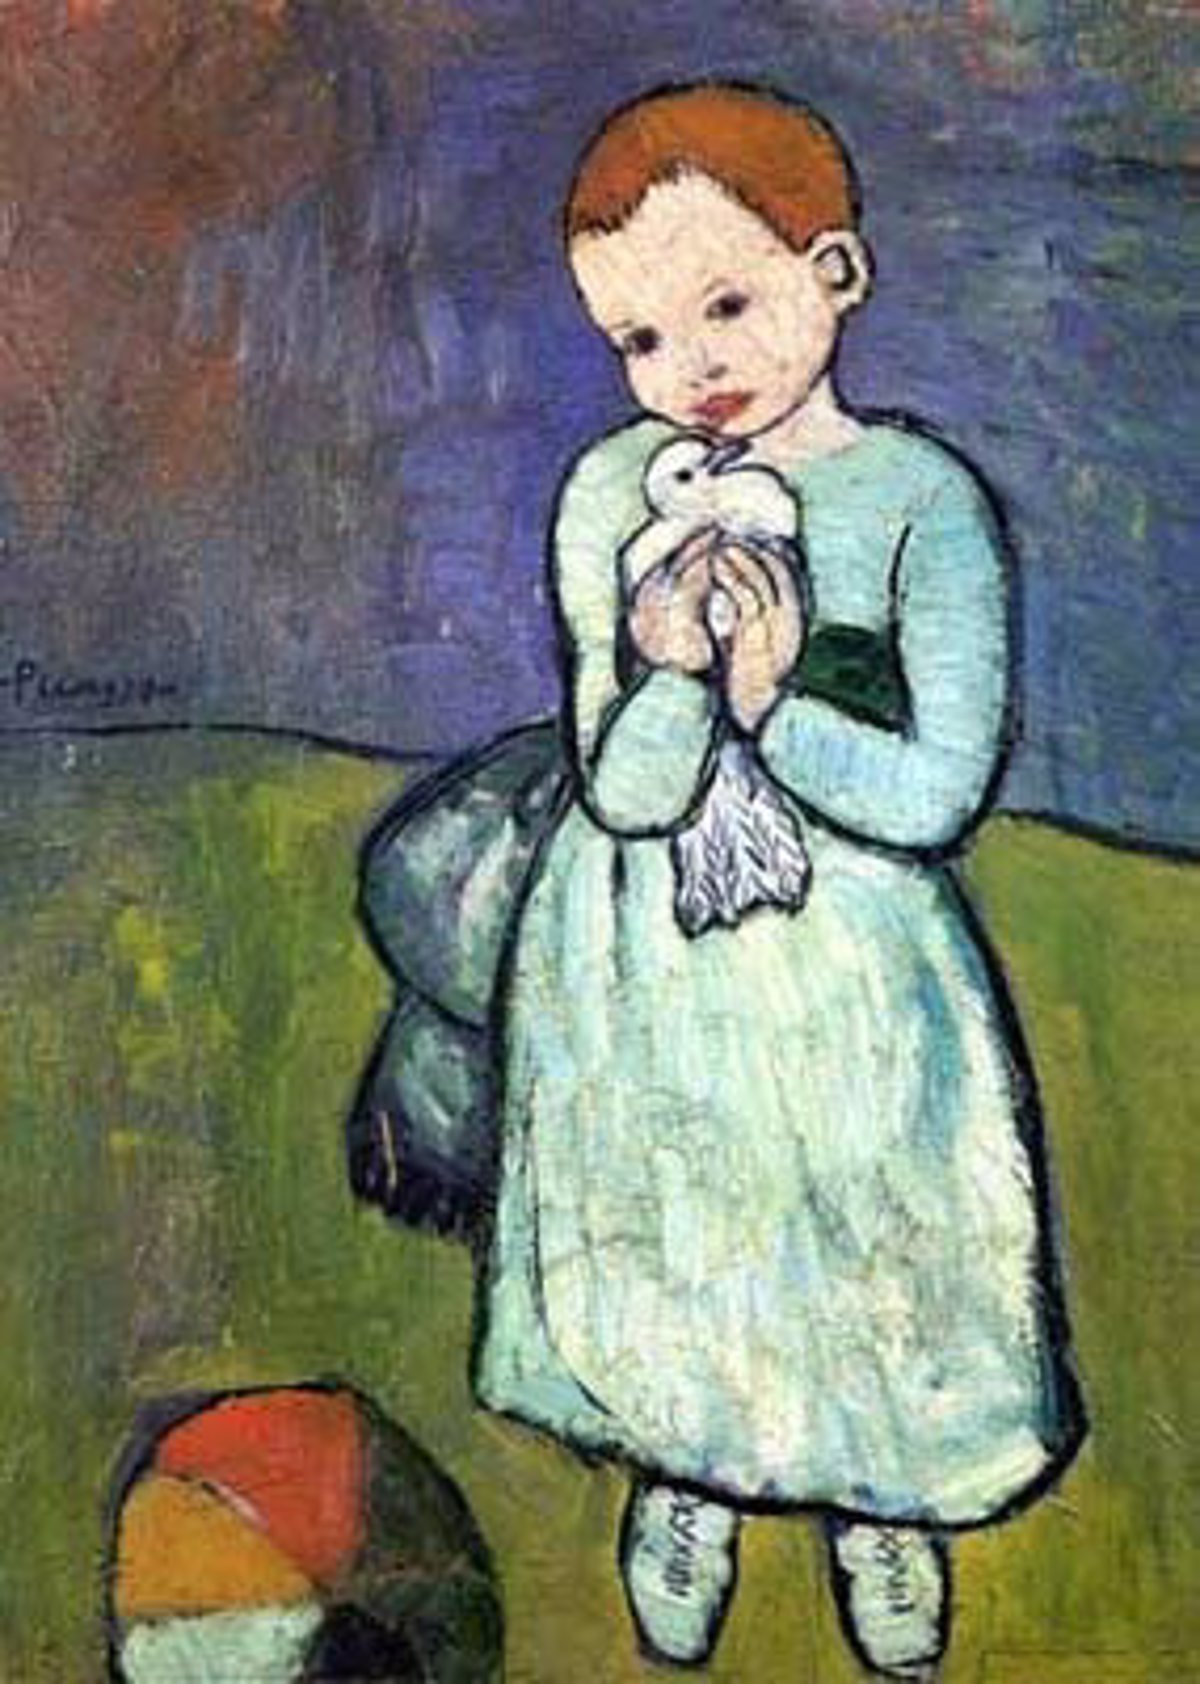 Sale al mercado 'Niño con una paloma' de Picasso, valorado en de dólares